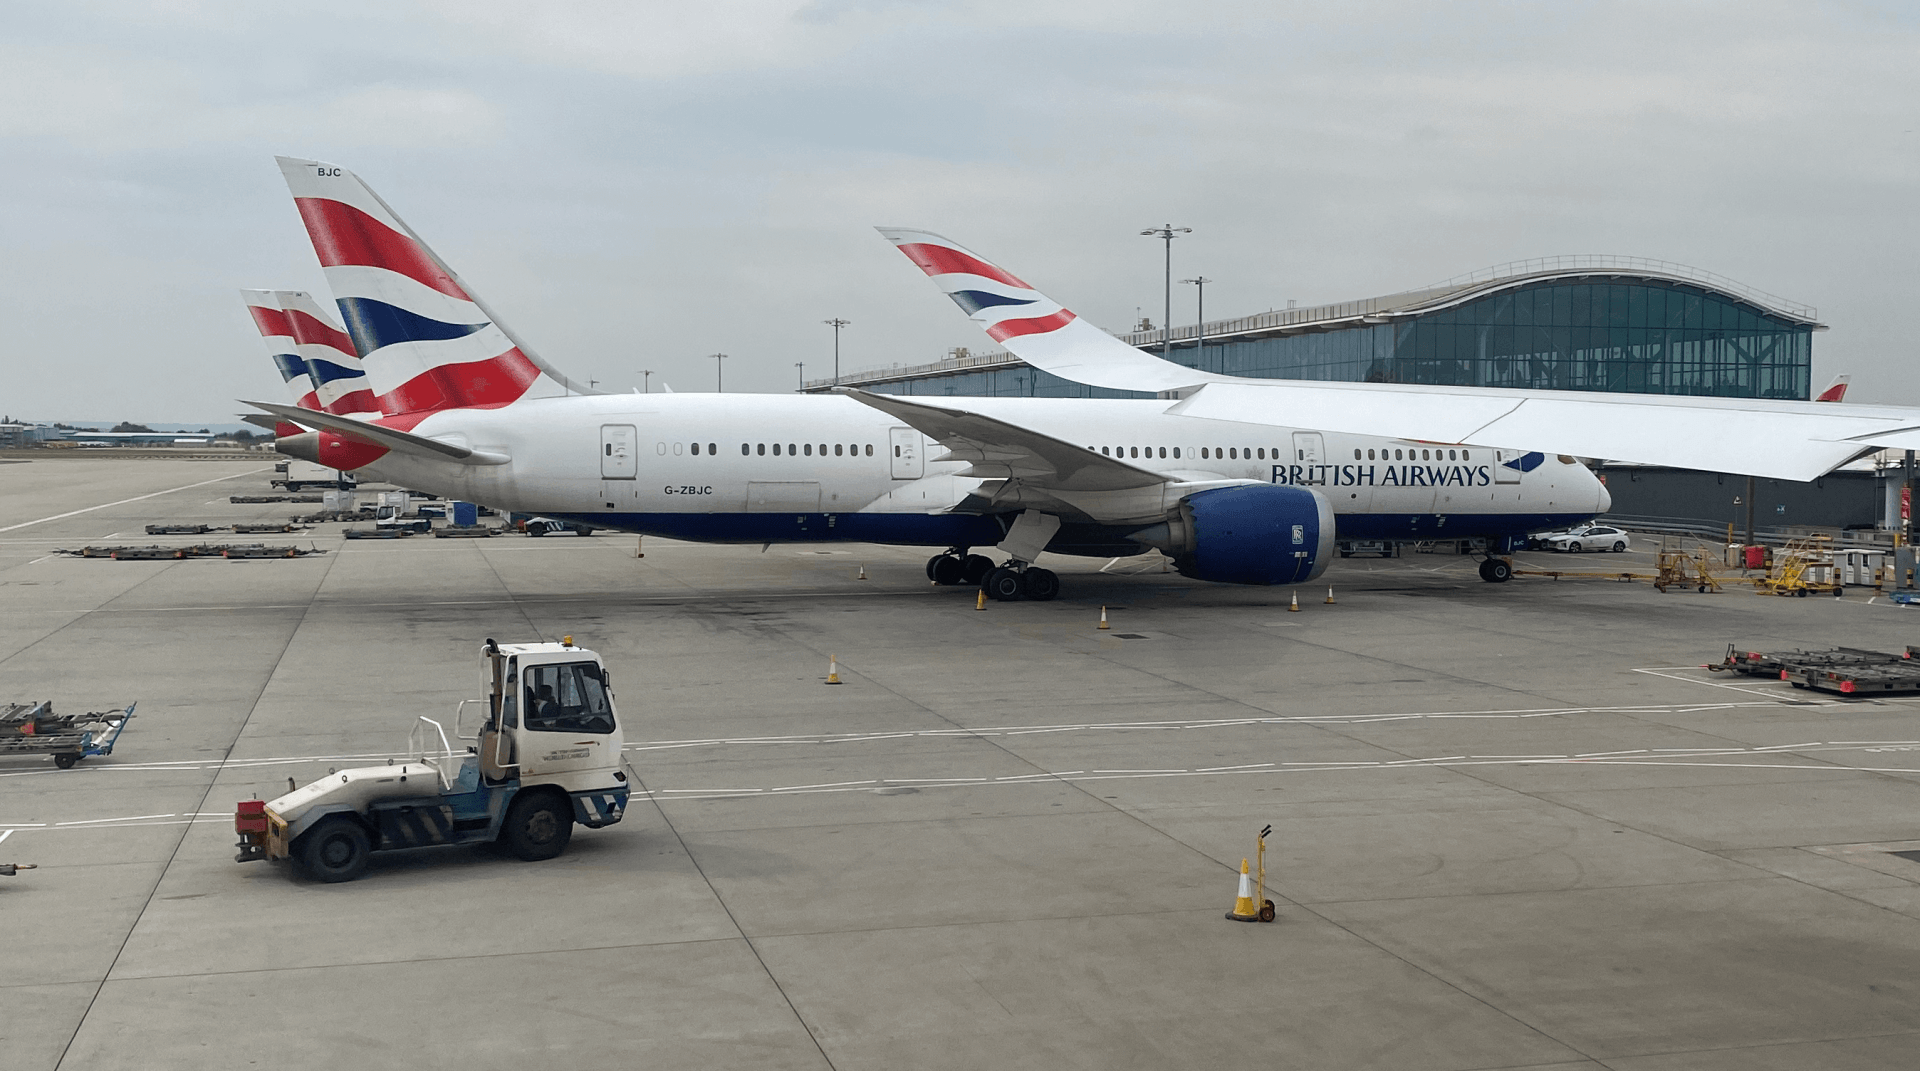 British Airways planes at London Heathrow